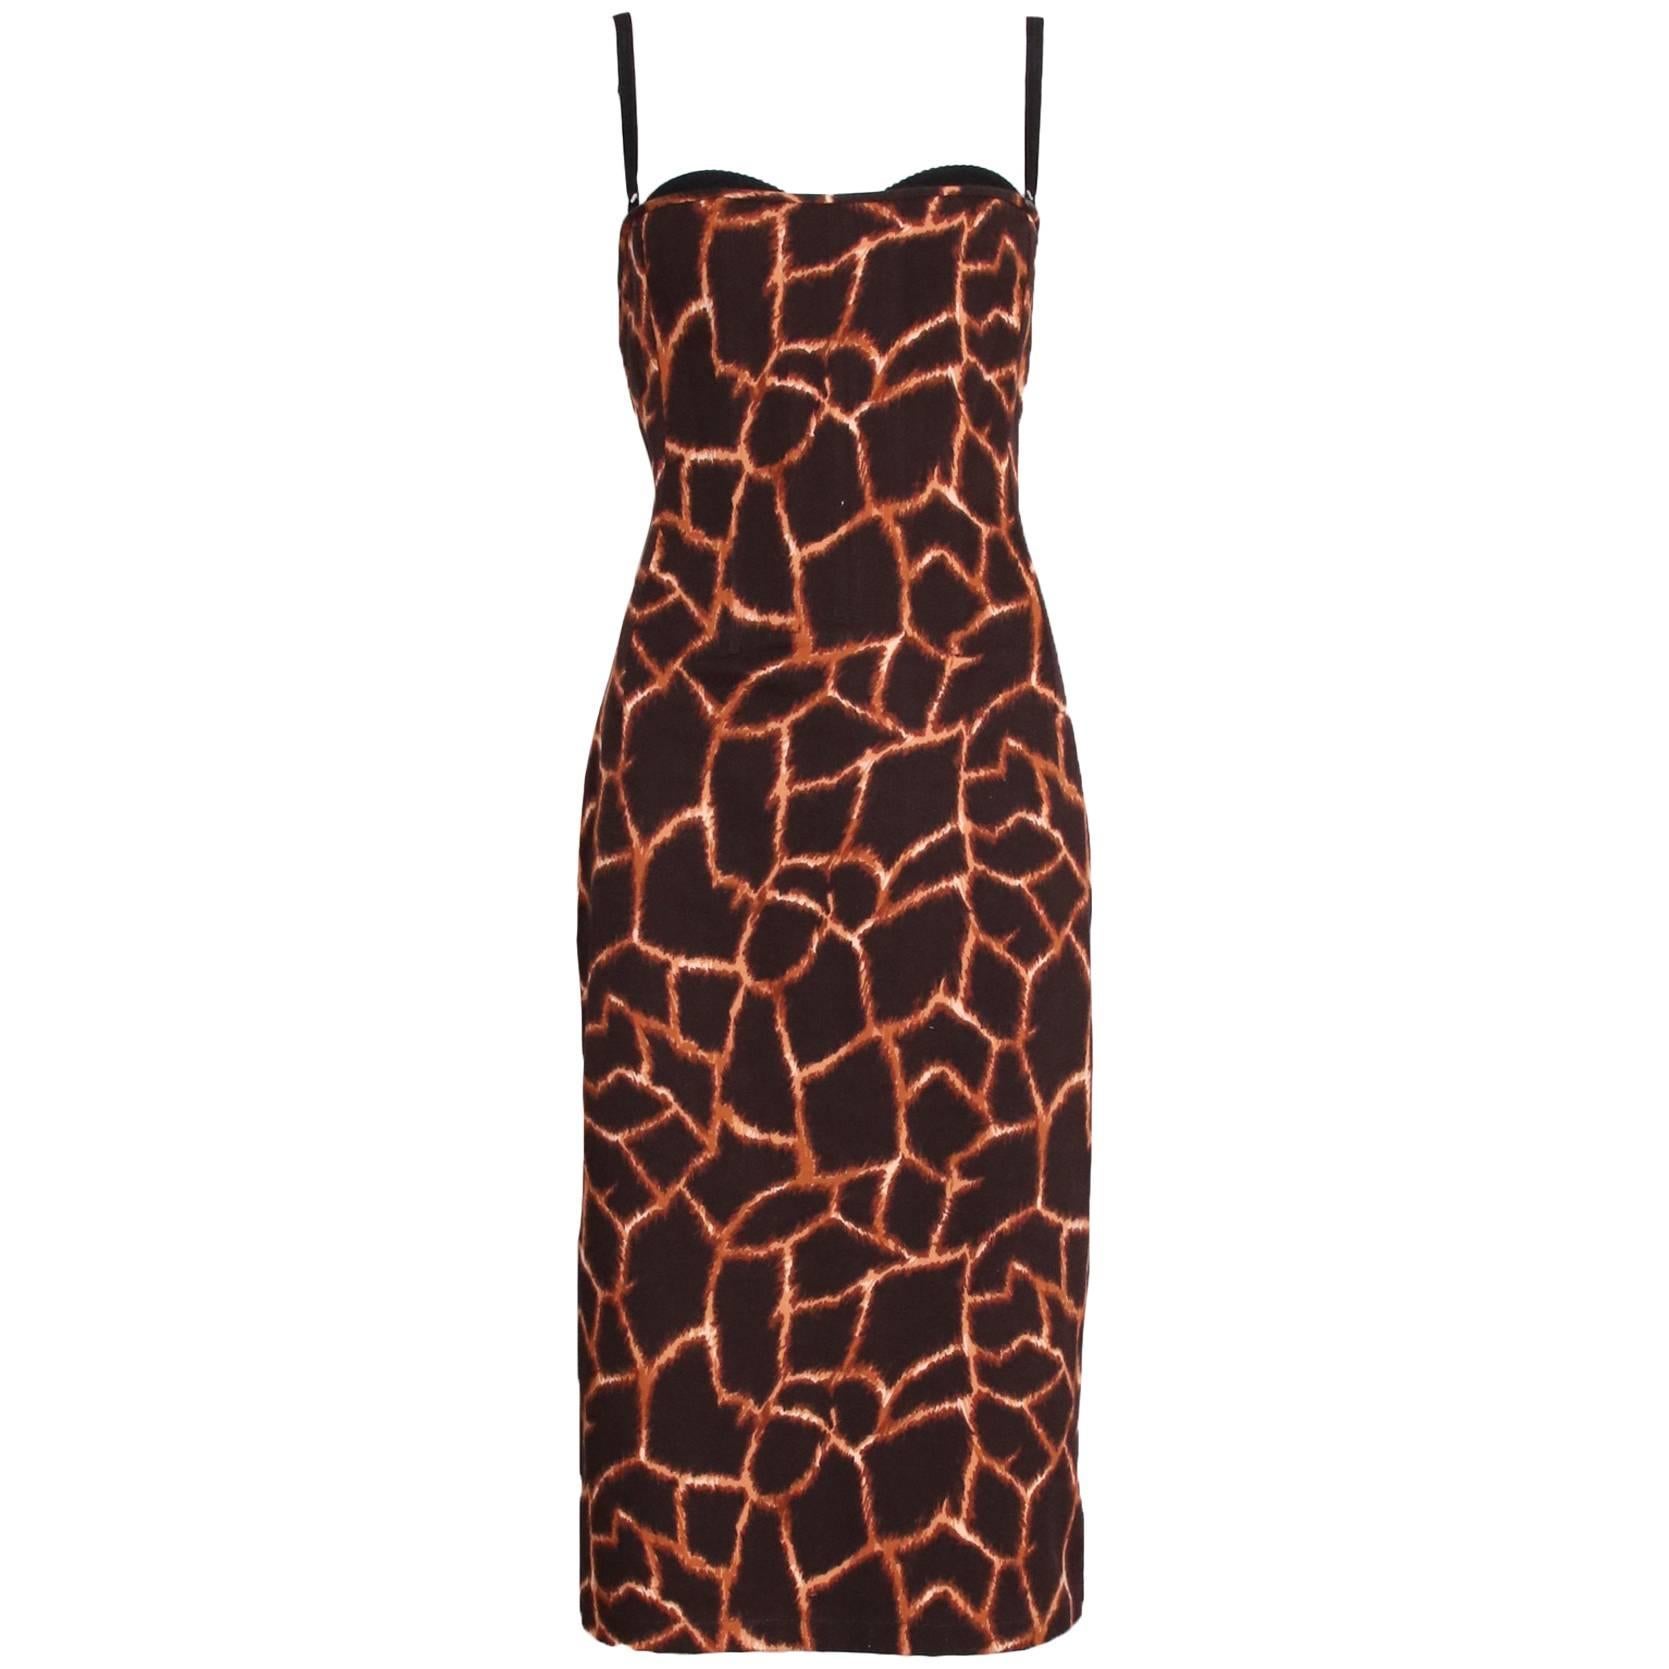 Dolce & Gabbana Giraffe Print Bustier Dress